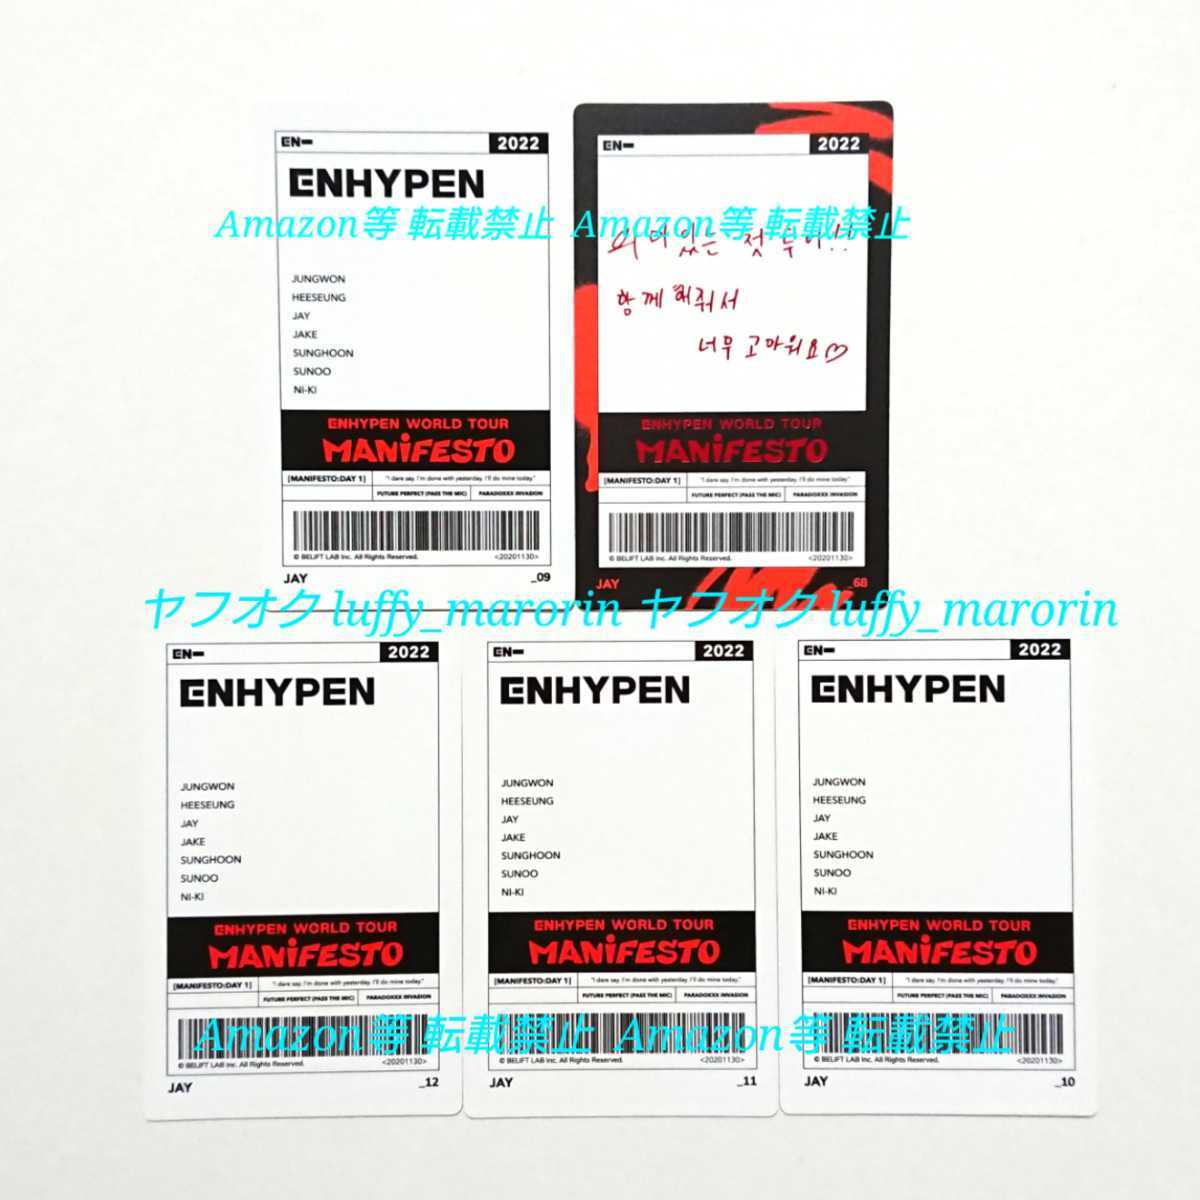 ENHYPEN WORLD TOUR MANiFESTO フォトカード トレカ スペシャルカード ジェイ JAY エンハイプン エナイプン イプニ エナプ ワルツ